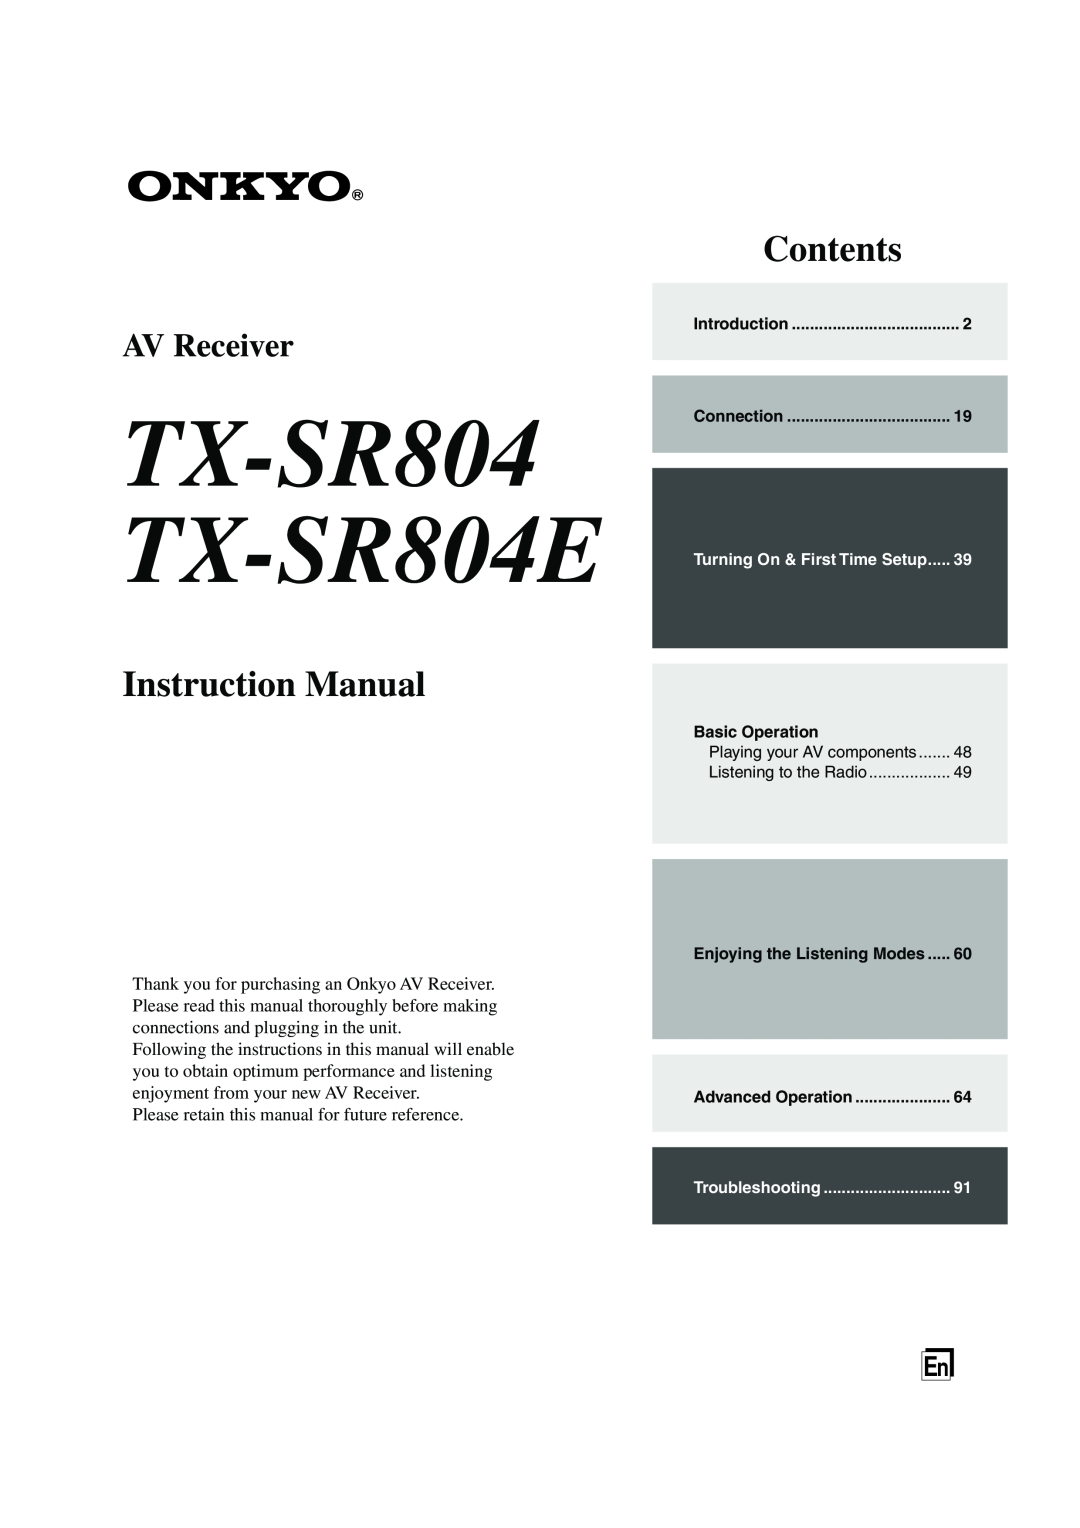 Onkyo instruction manual TX-SR804 TX-SR804E, Instruction Manual, Contents, AV Receiver 